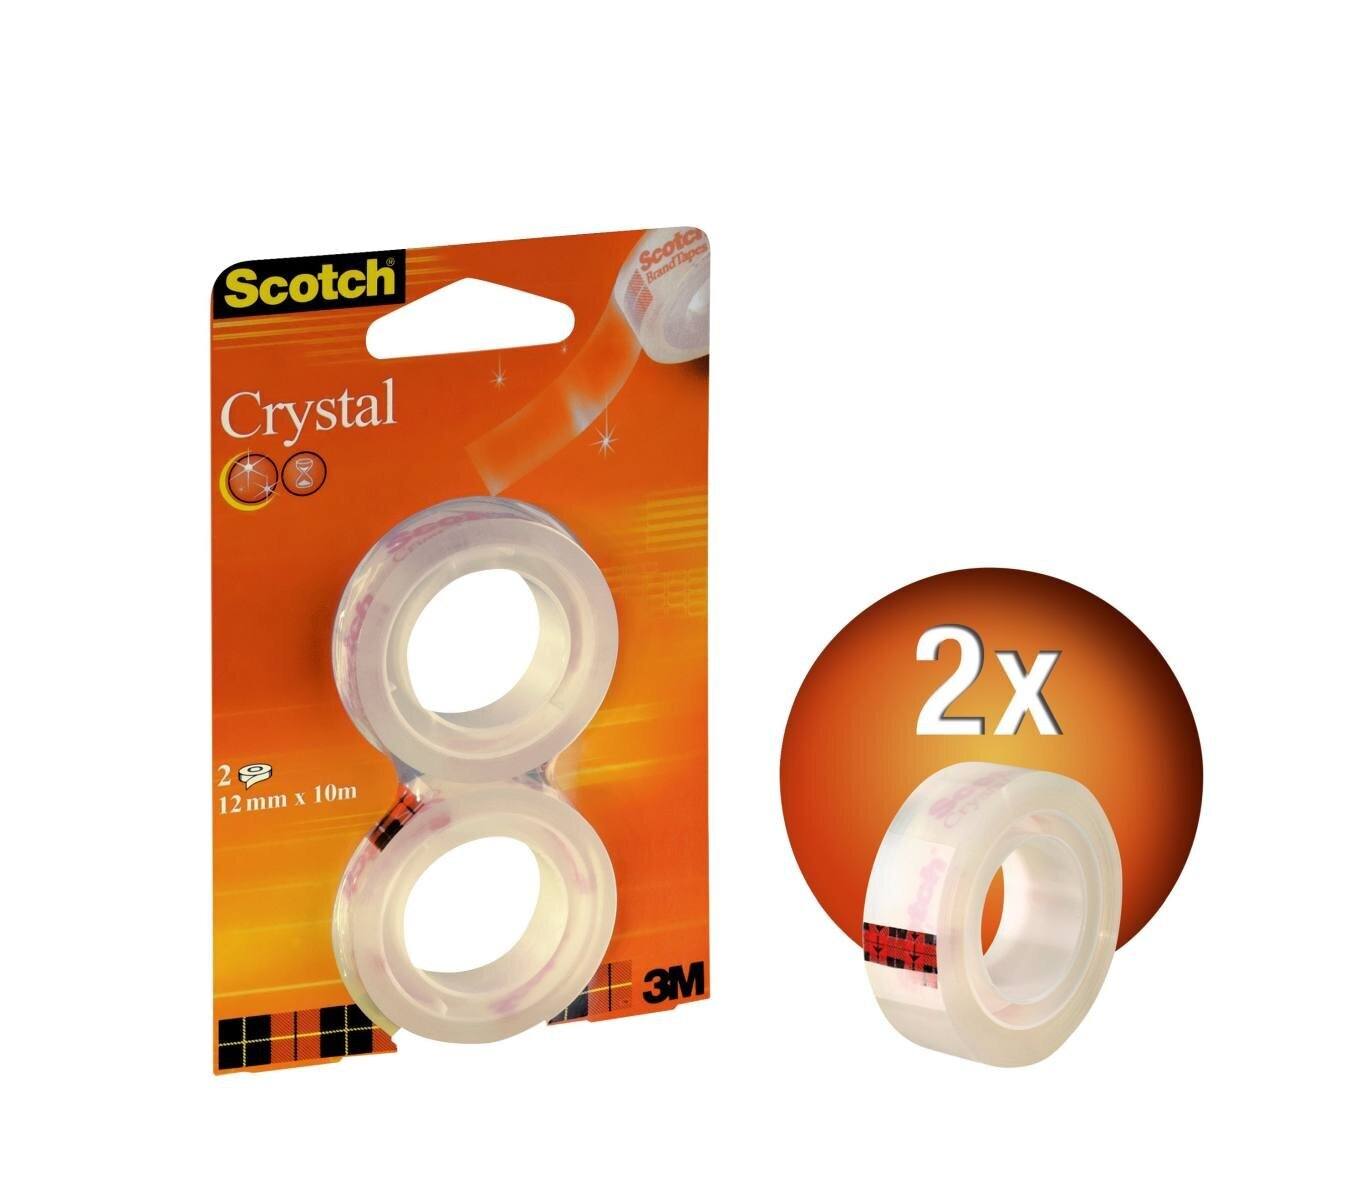 3M Scotch Crystal Klebeband Nachfüllpackung mit 2 Rollen 12 mm x 10 m, transparent, 6-1210R2